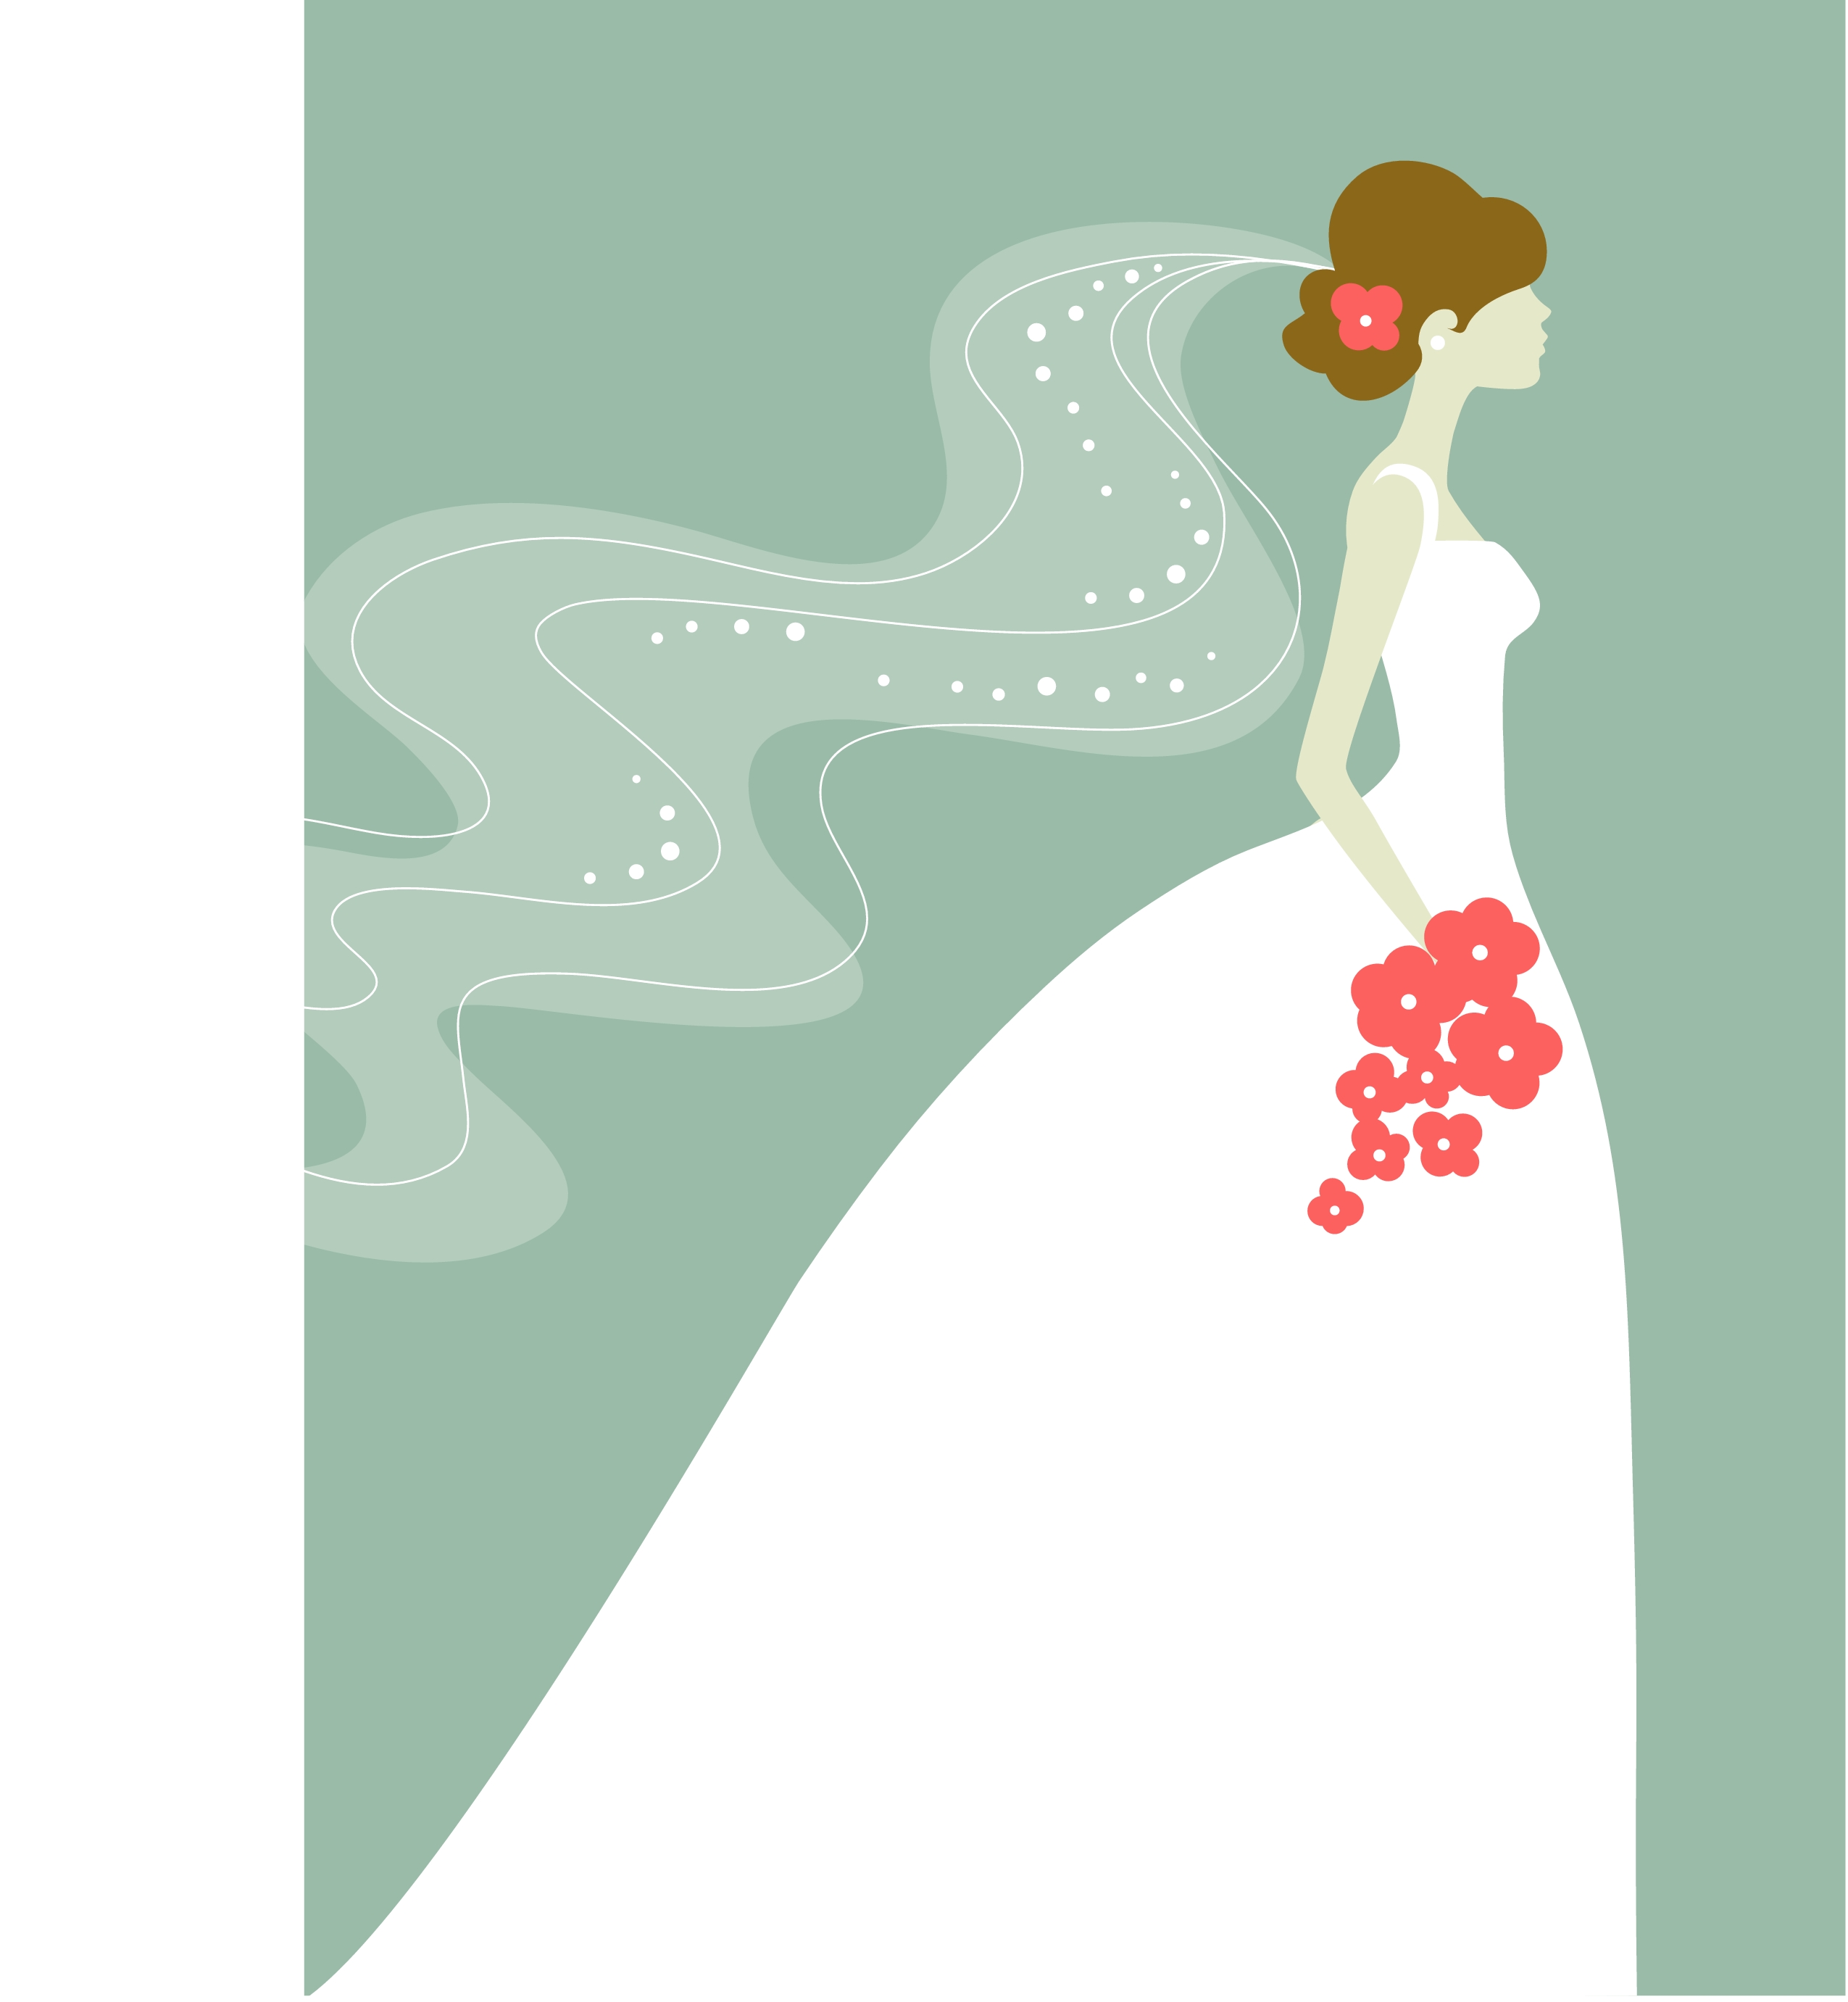 bridal party clip art